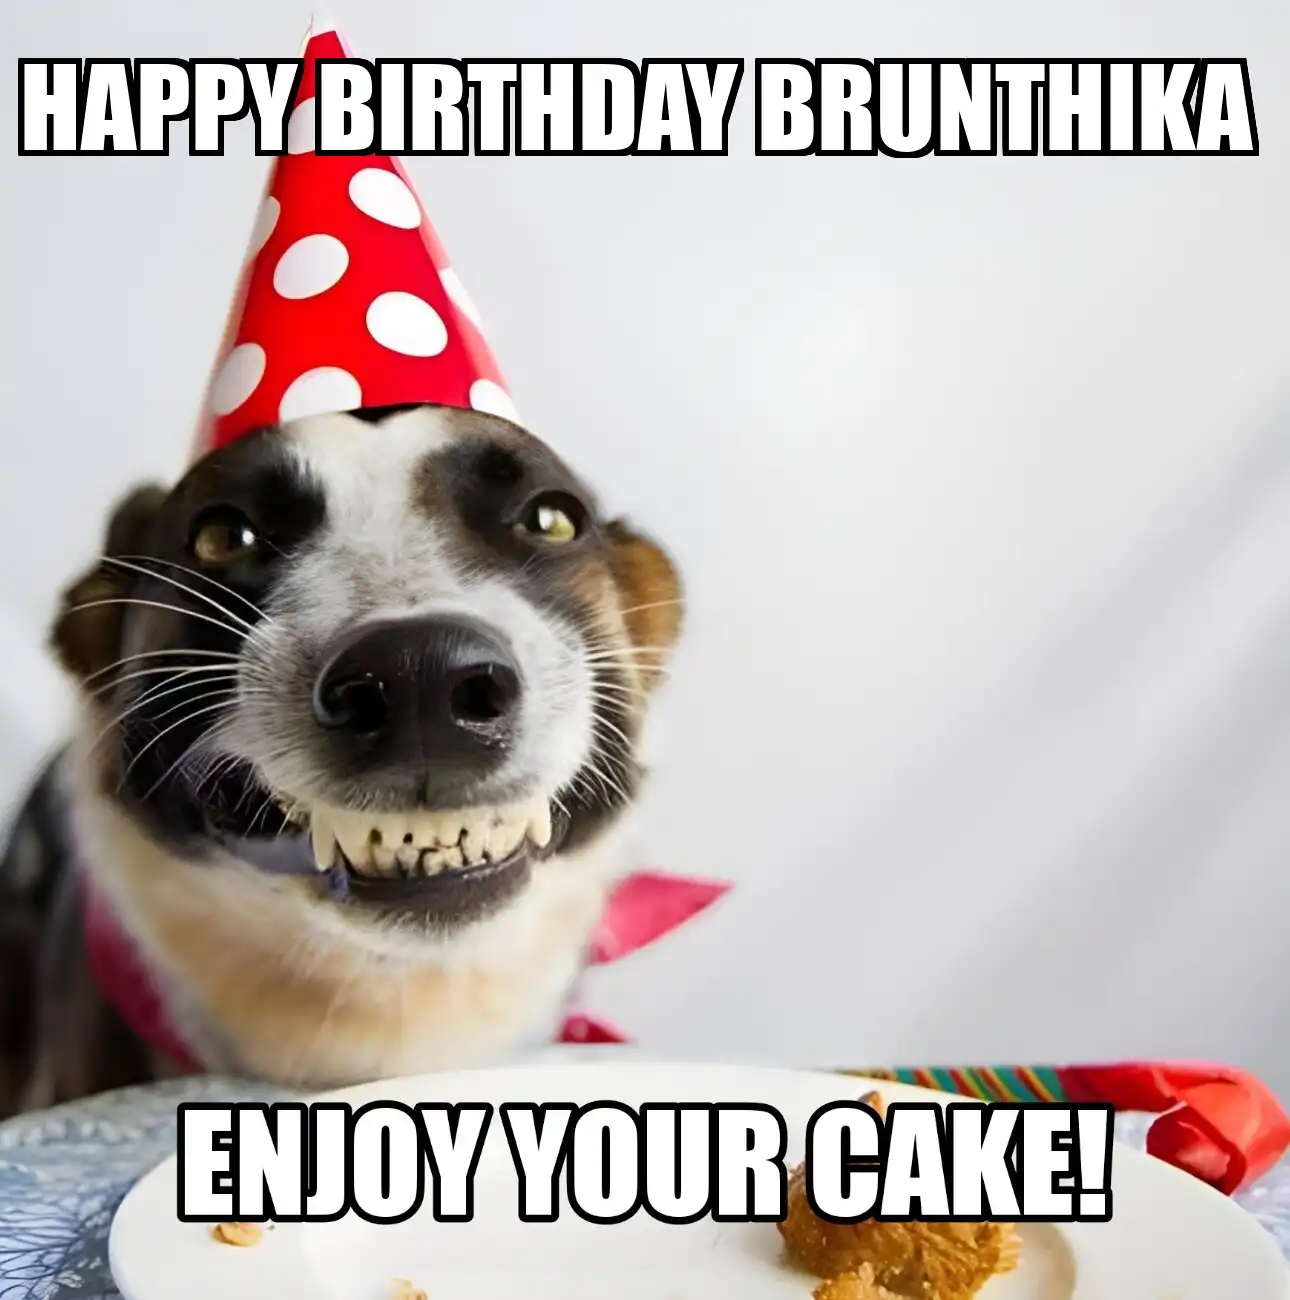 Happy Birthday Brunthika Enjoy Your Cake Dog Meme